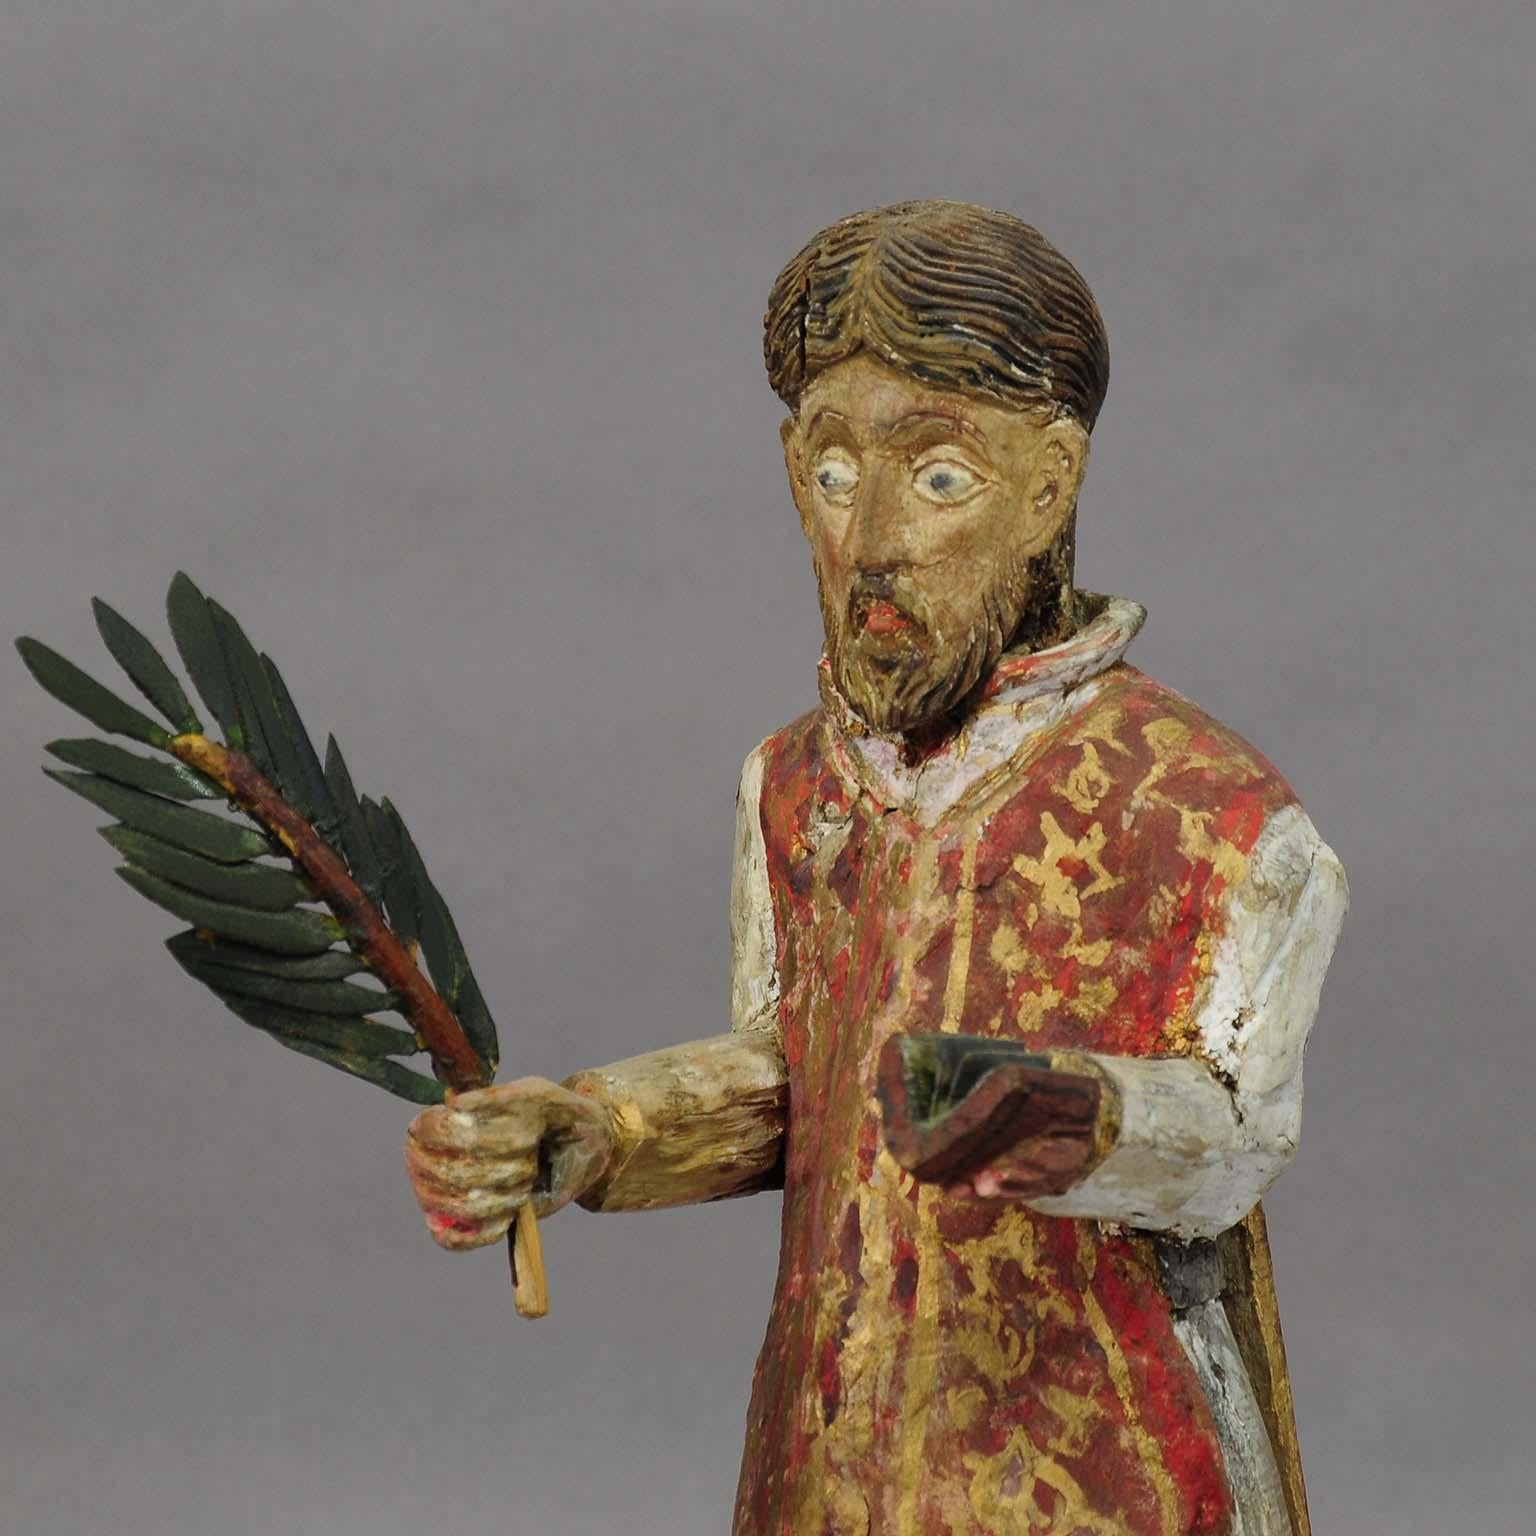 Sculpture en bois sculptée d'un saint, vers 1850

Sculpture d'un saint avec une branche de palmier, magnifiquement sculptée et peinte à la main. Il a probablement été fabriqué par des artisans arméniens ou géorgiens vers 1850.

Mesures :
Largeur 14